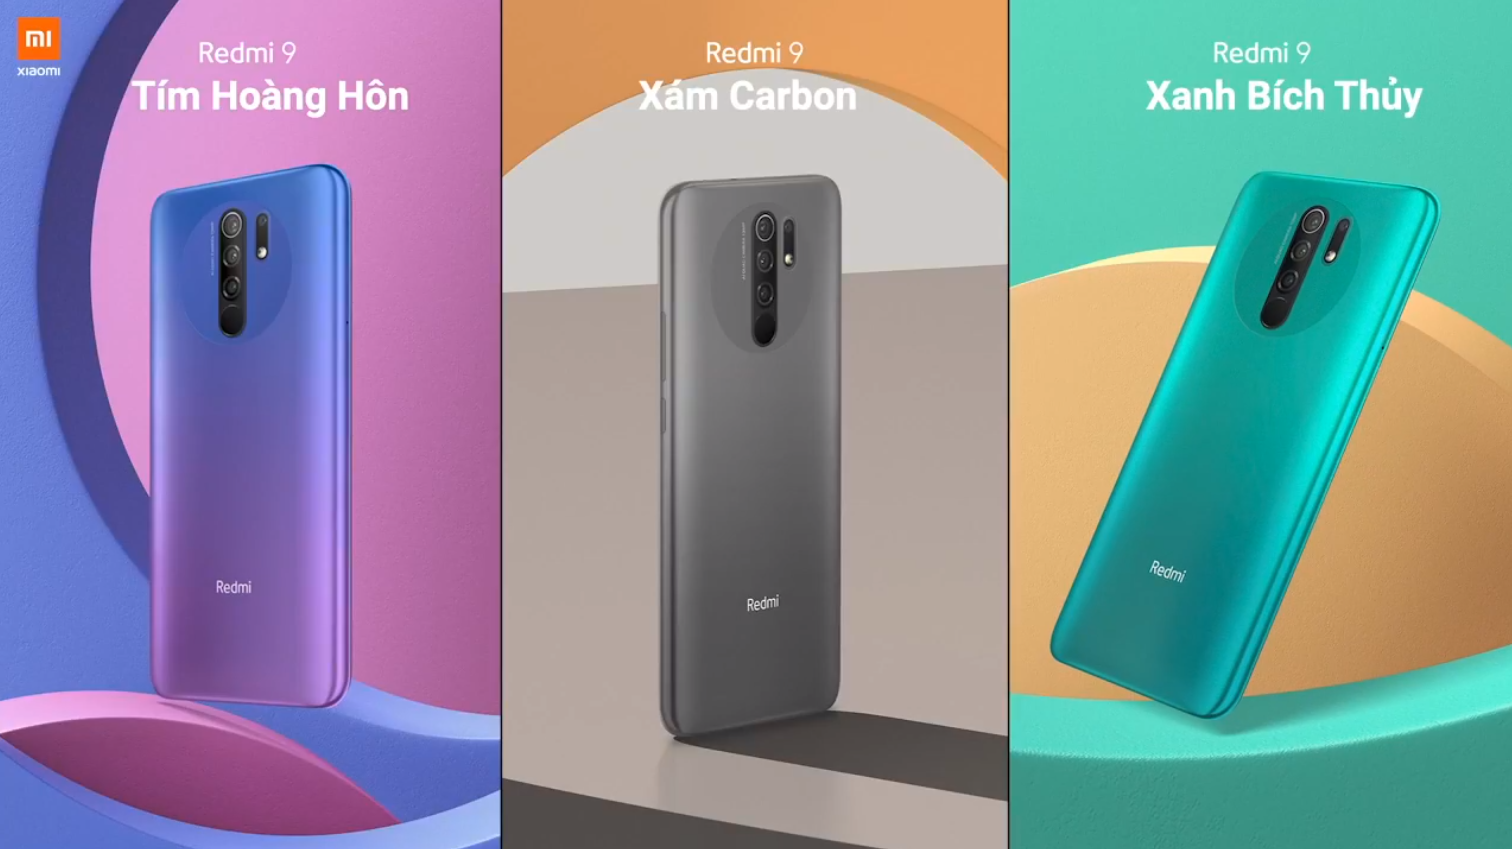 Sforum - Trang thông tin công nghệ mới nhất Xiaomi-redmi-9-2 Redmi 9 ra mắt tại VN: Smartphone phong cách nhất, màn hình lớn nhất, nhiều công nghệ nhất và giá "trung thực" nhất phân khúc 